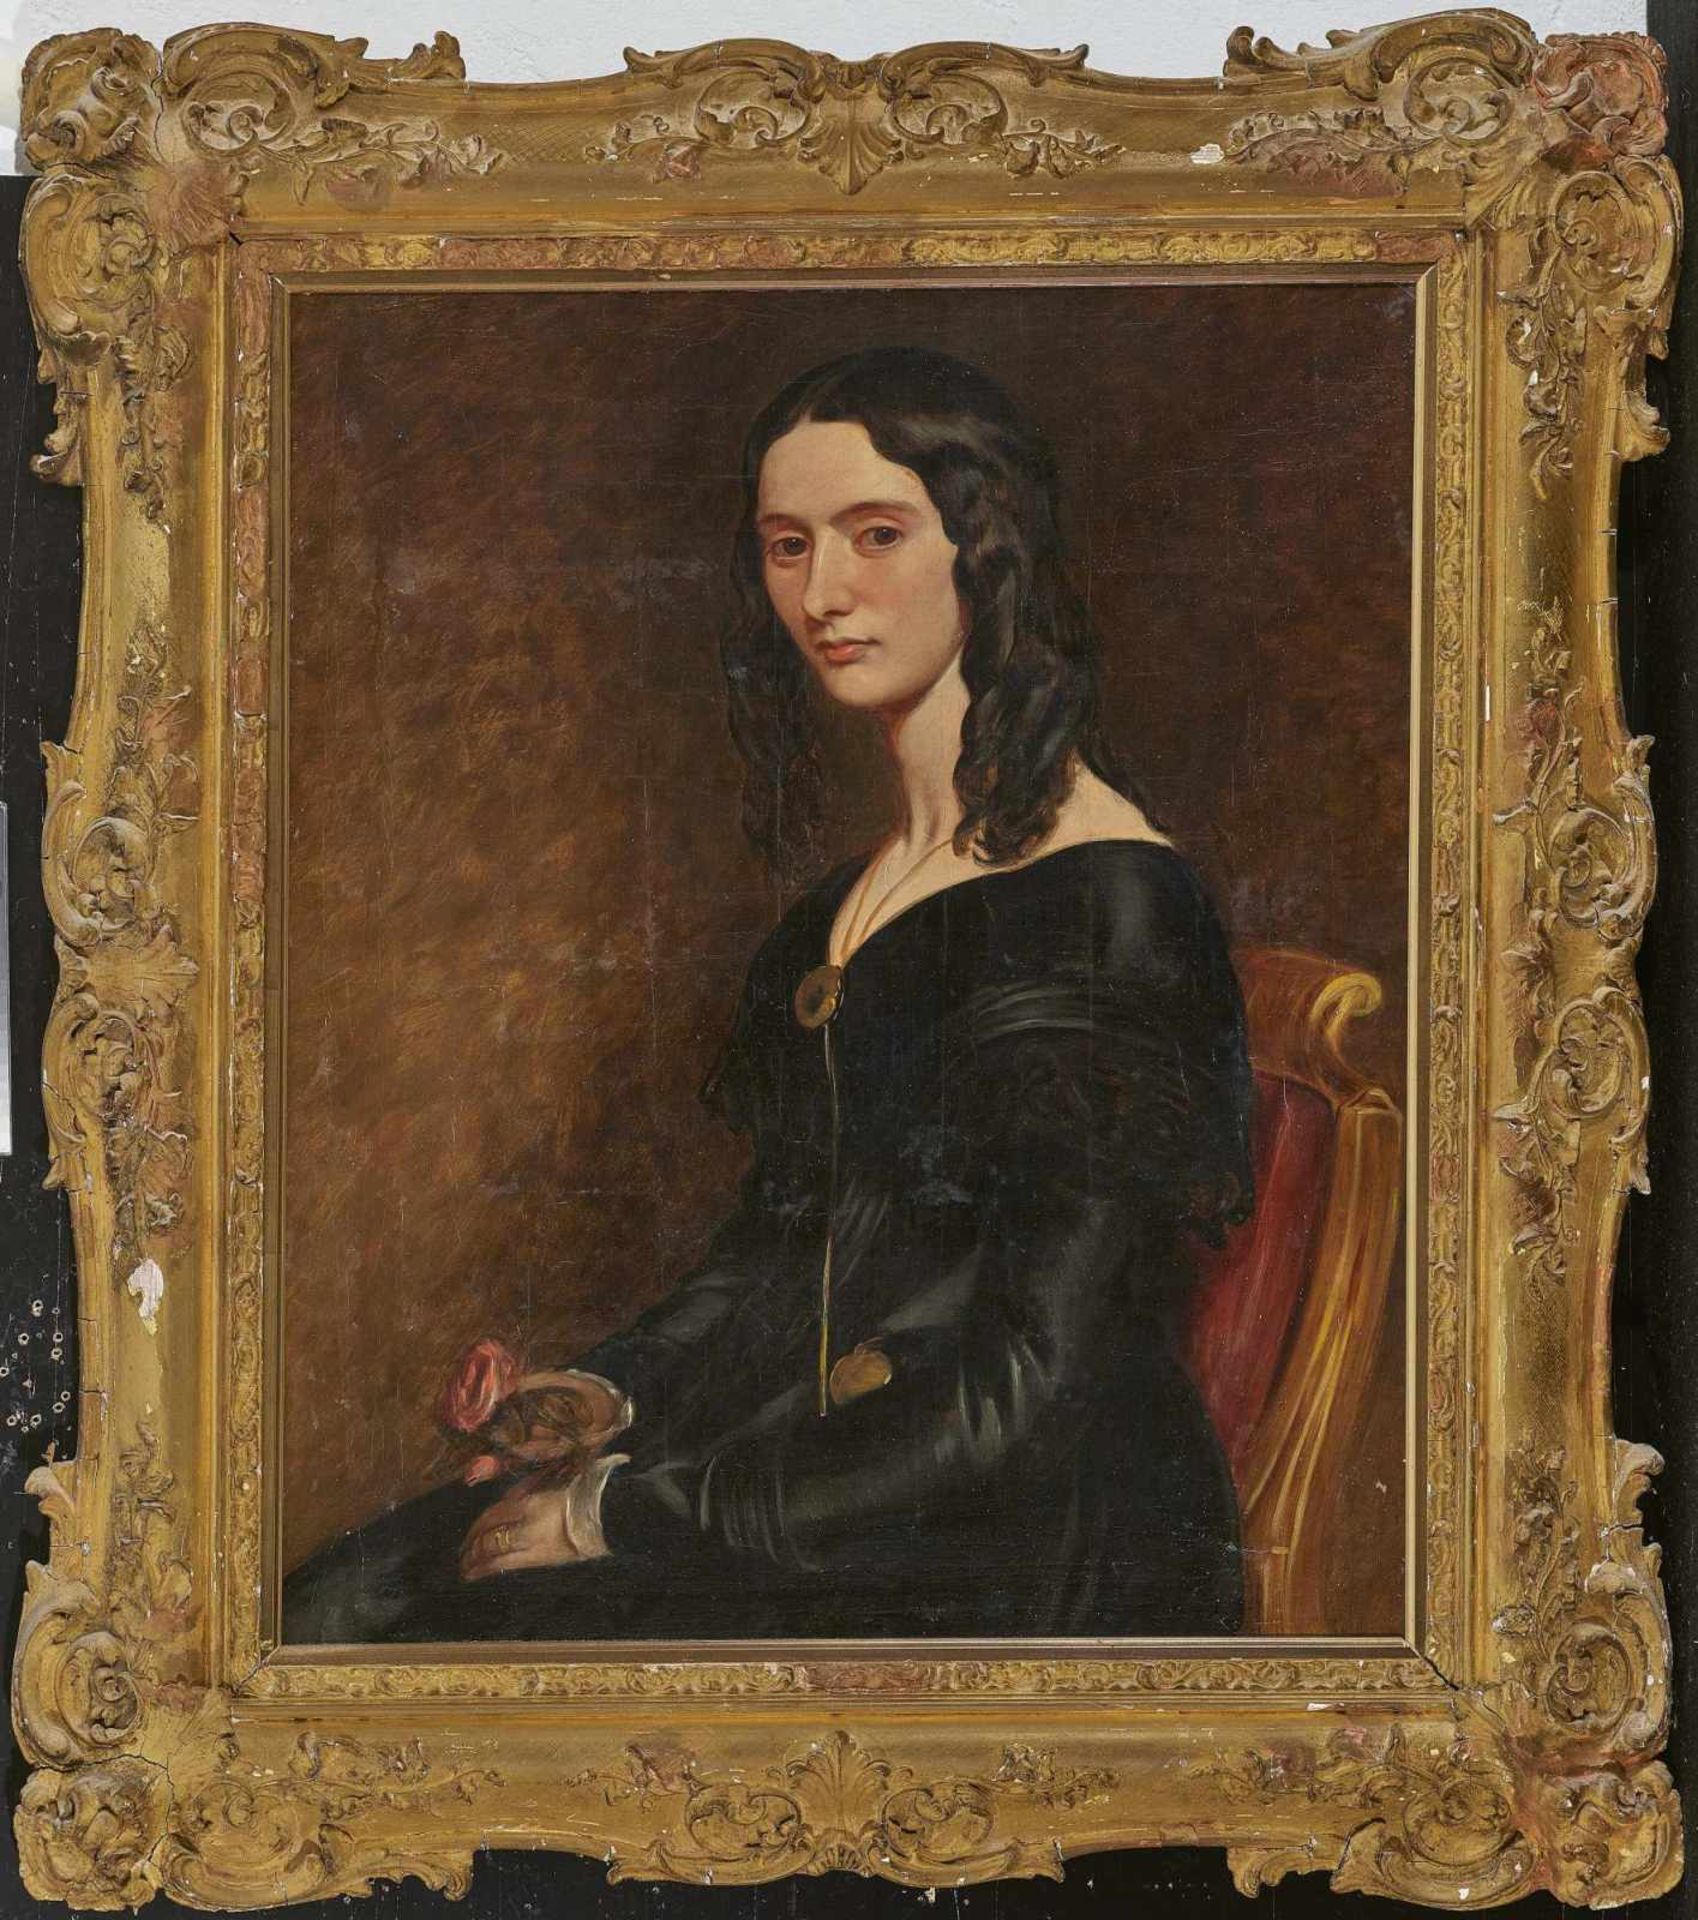 ENGLAND um 1840 Dame in schwarzem Kleid Halbfigur nach links sitzend. Öl auf Lwd. 91 x 71 cm. - Bild 2 aus 2